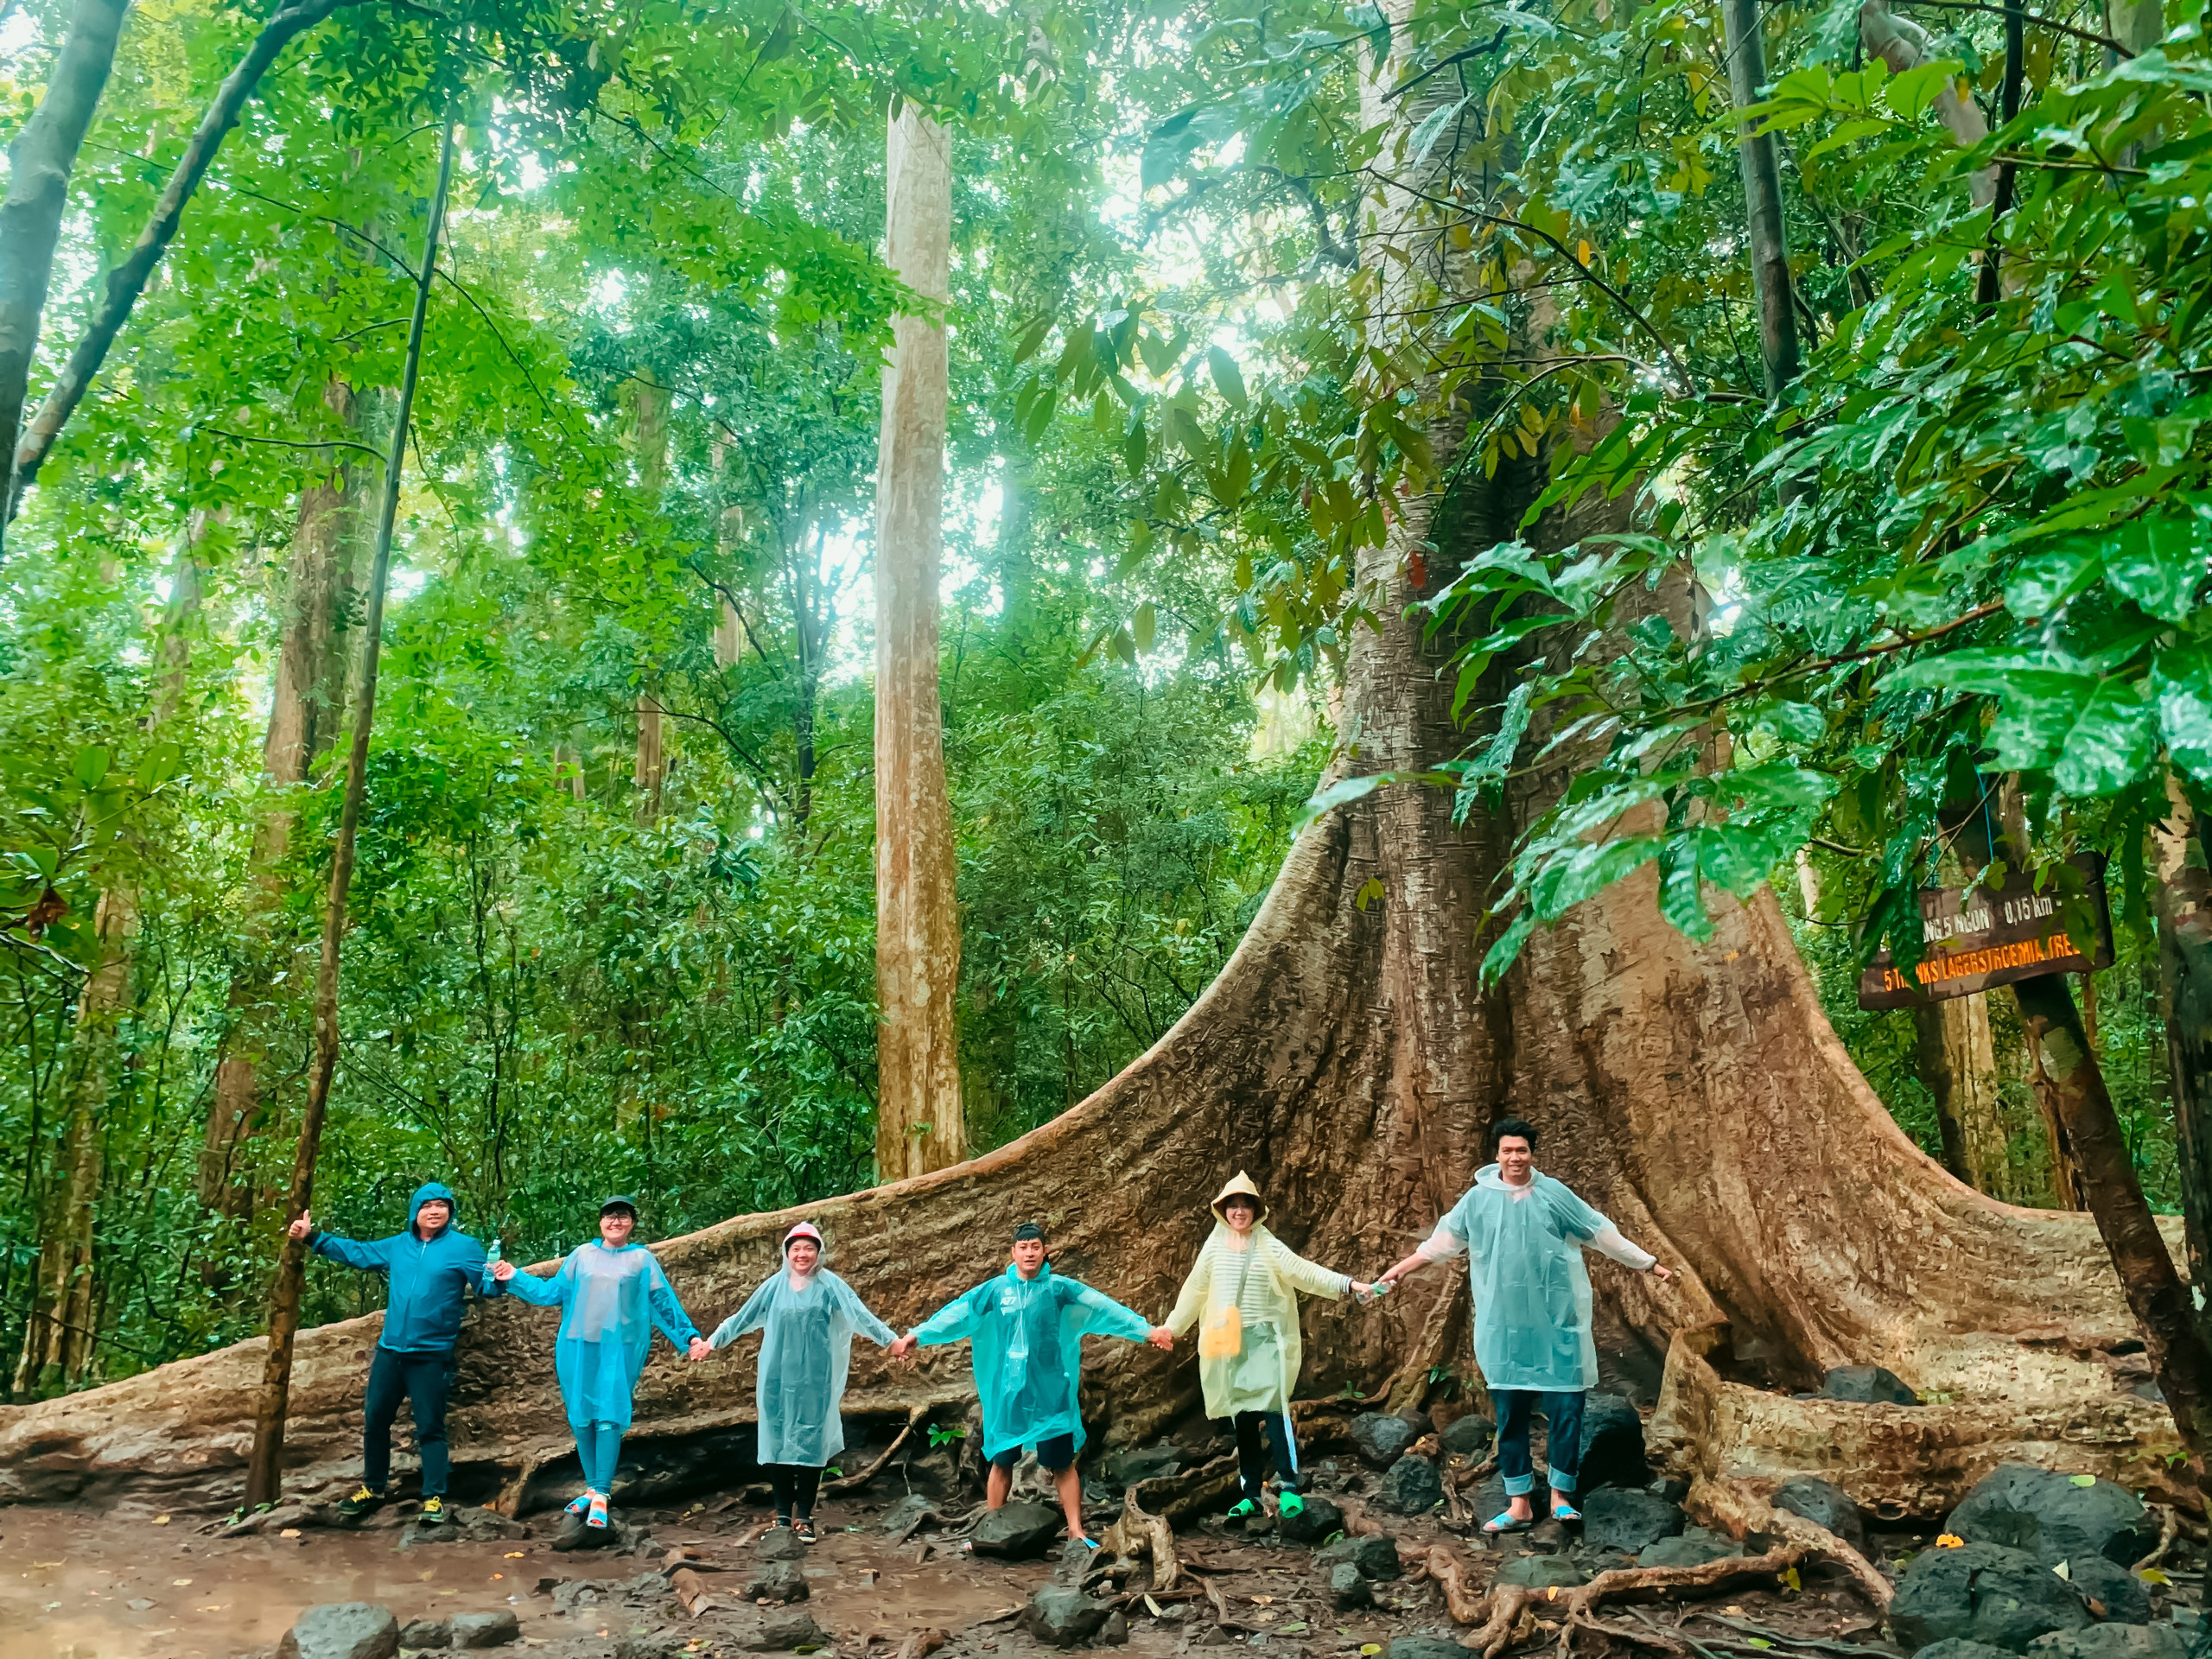 Đến cây Tung khổng lồ ở Vườn quốc gia Cát Tiên